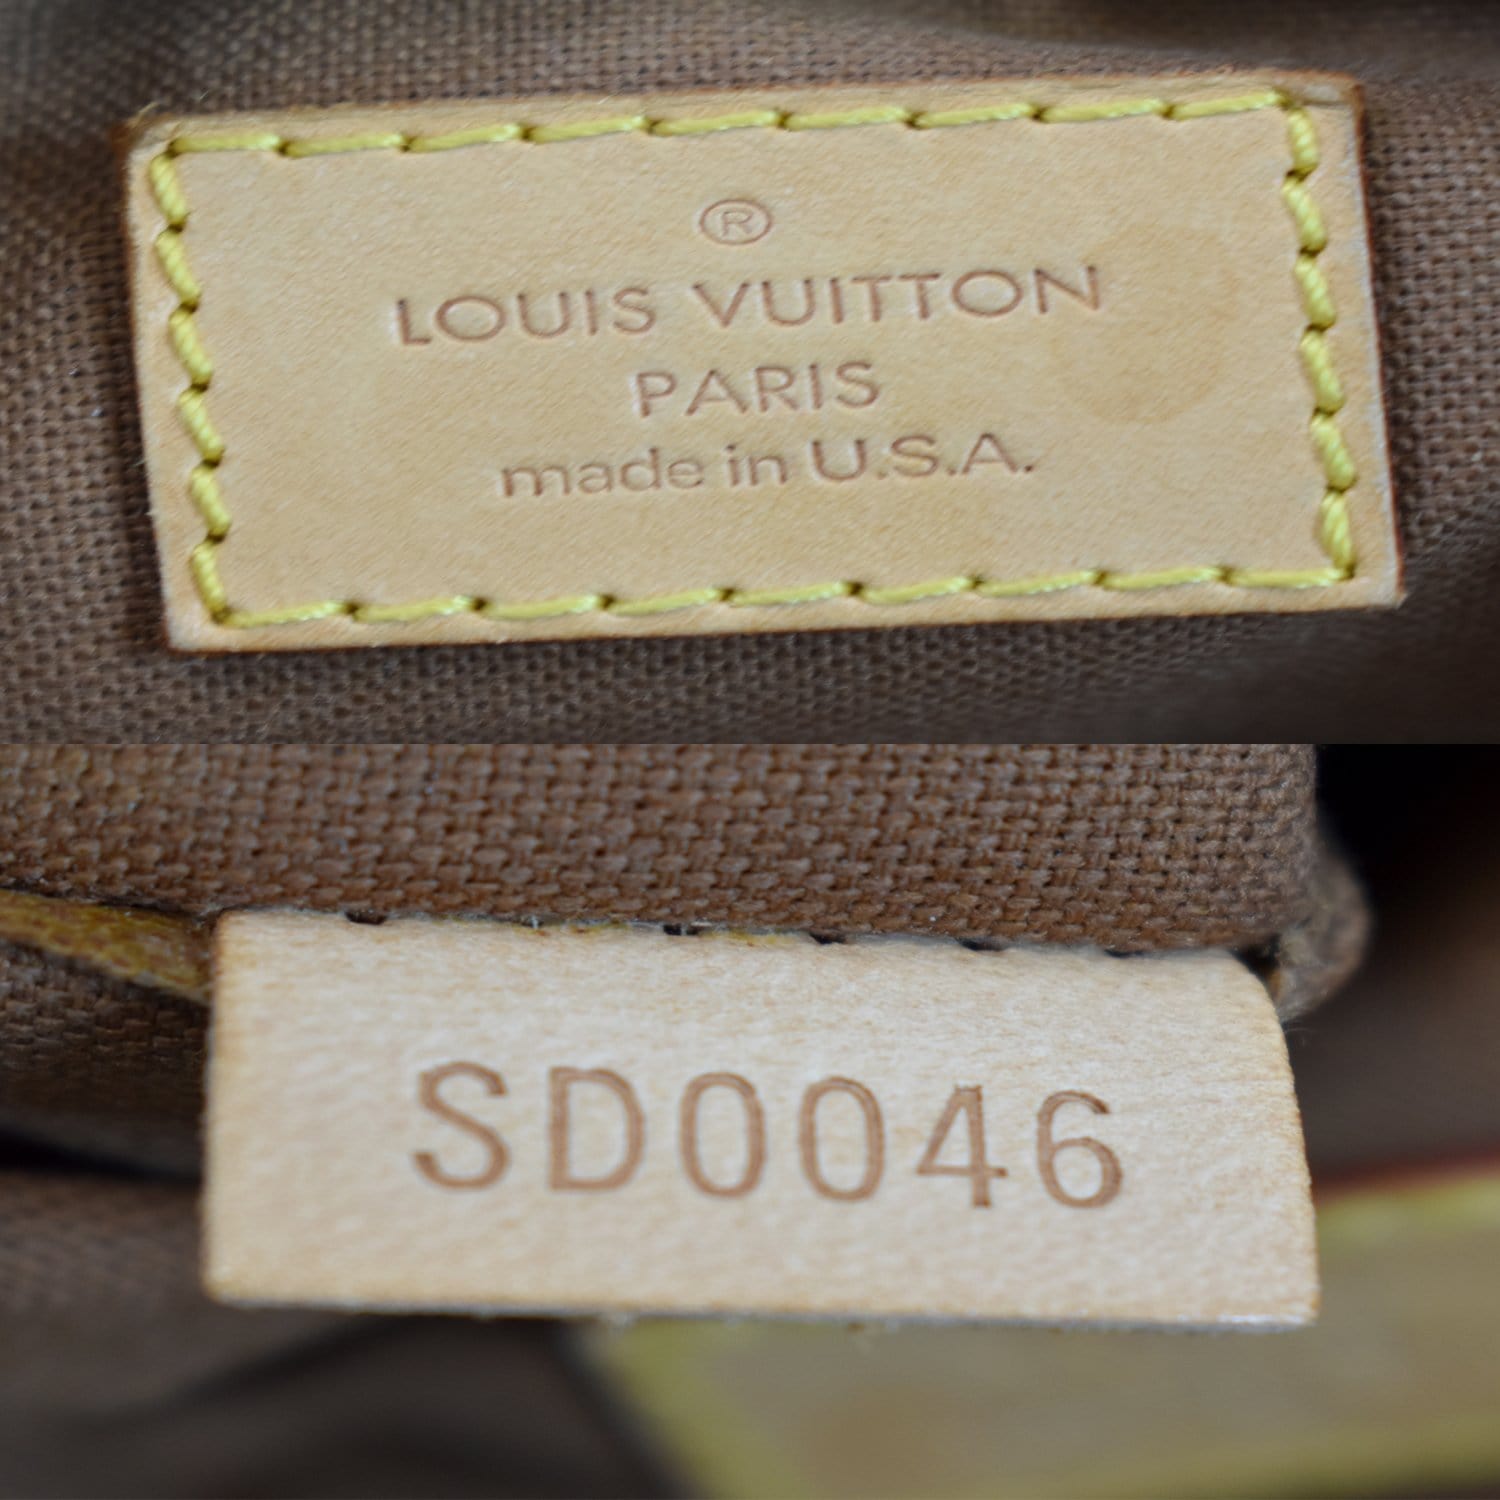 Pre-Owned Louis Vuitton Tulum Monogram PM Shoulder Bag - Excellent  Condition 